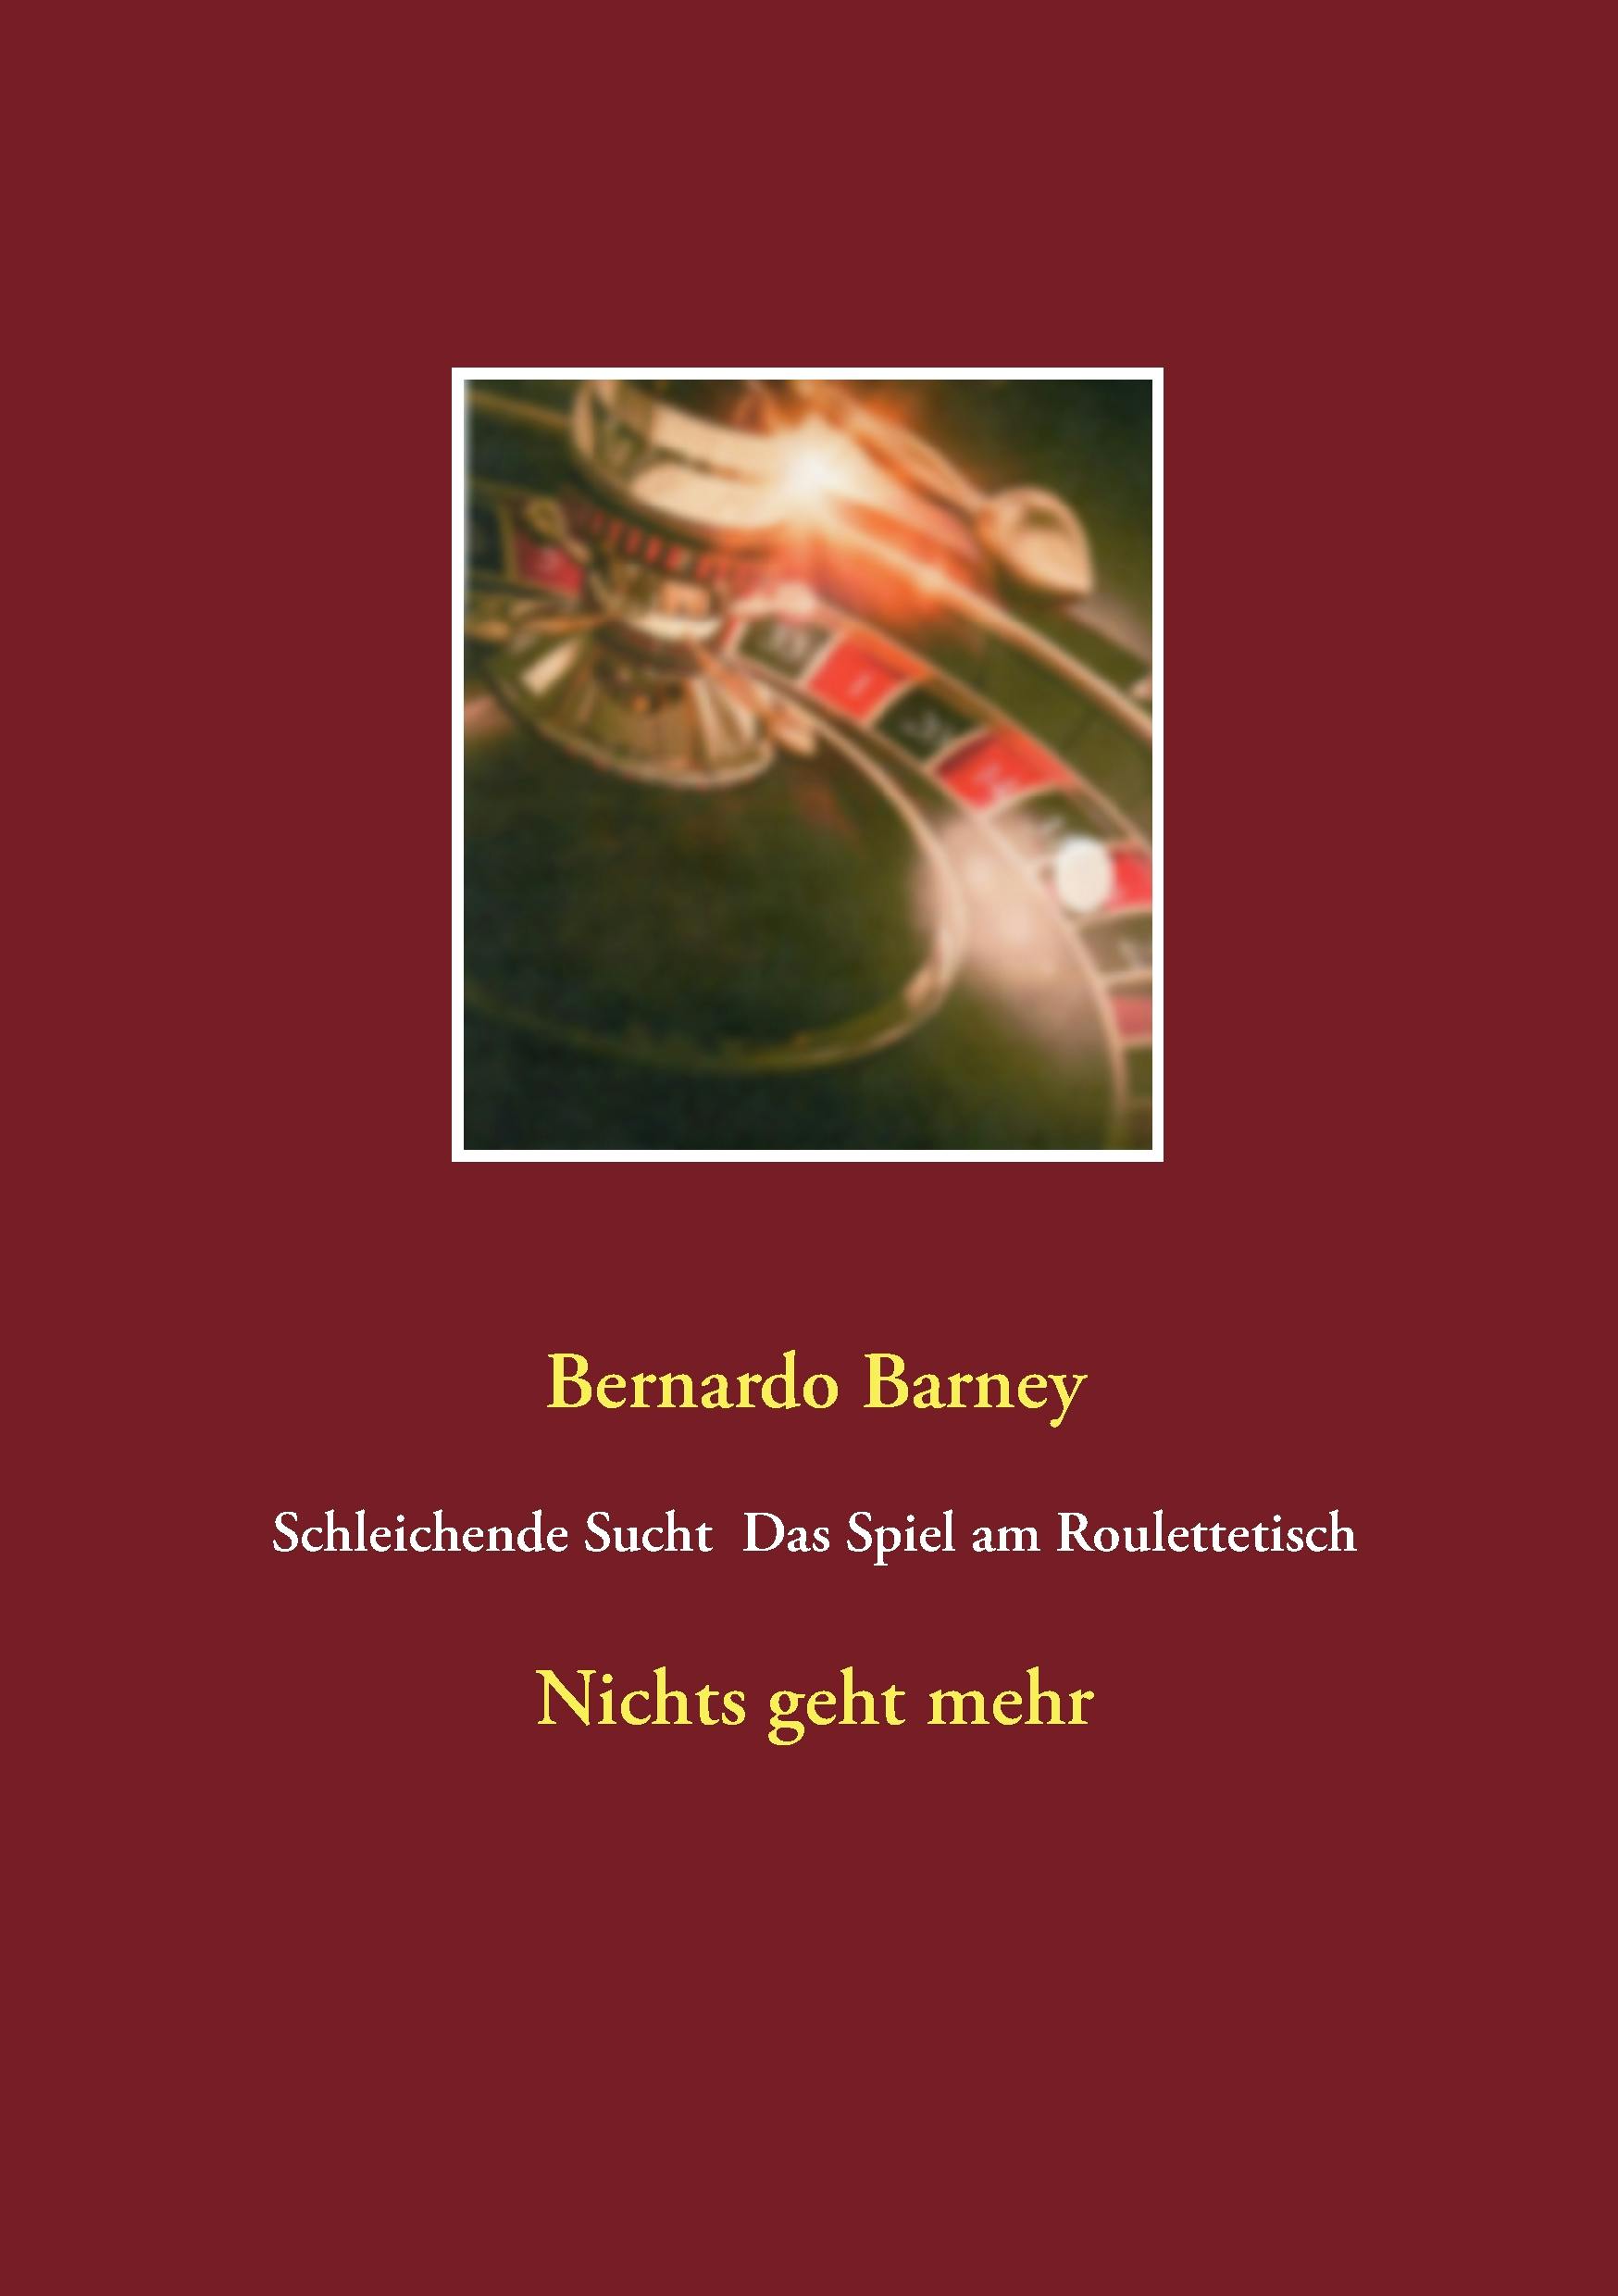 Schleichende Sucht - Das Spiel am Roulettetisch - Bernardo Barney